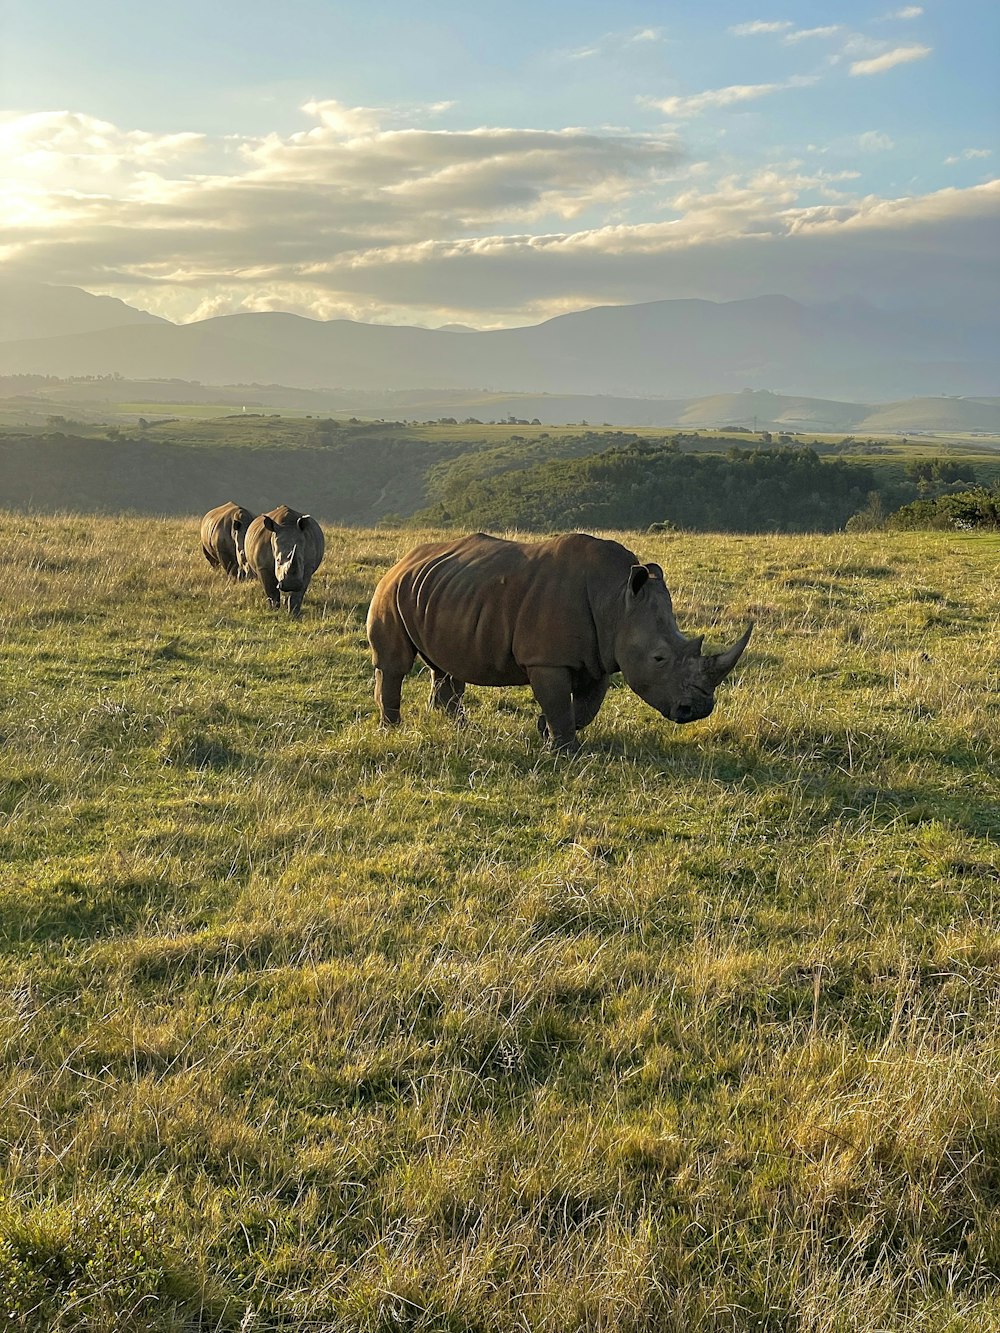 a rhinoceros and rhinoceros grazing in a field